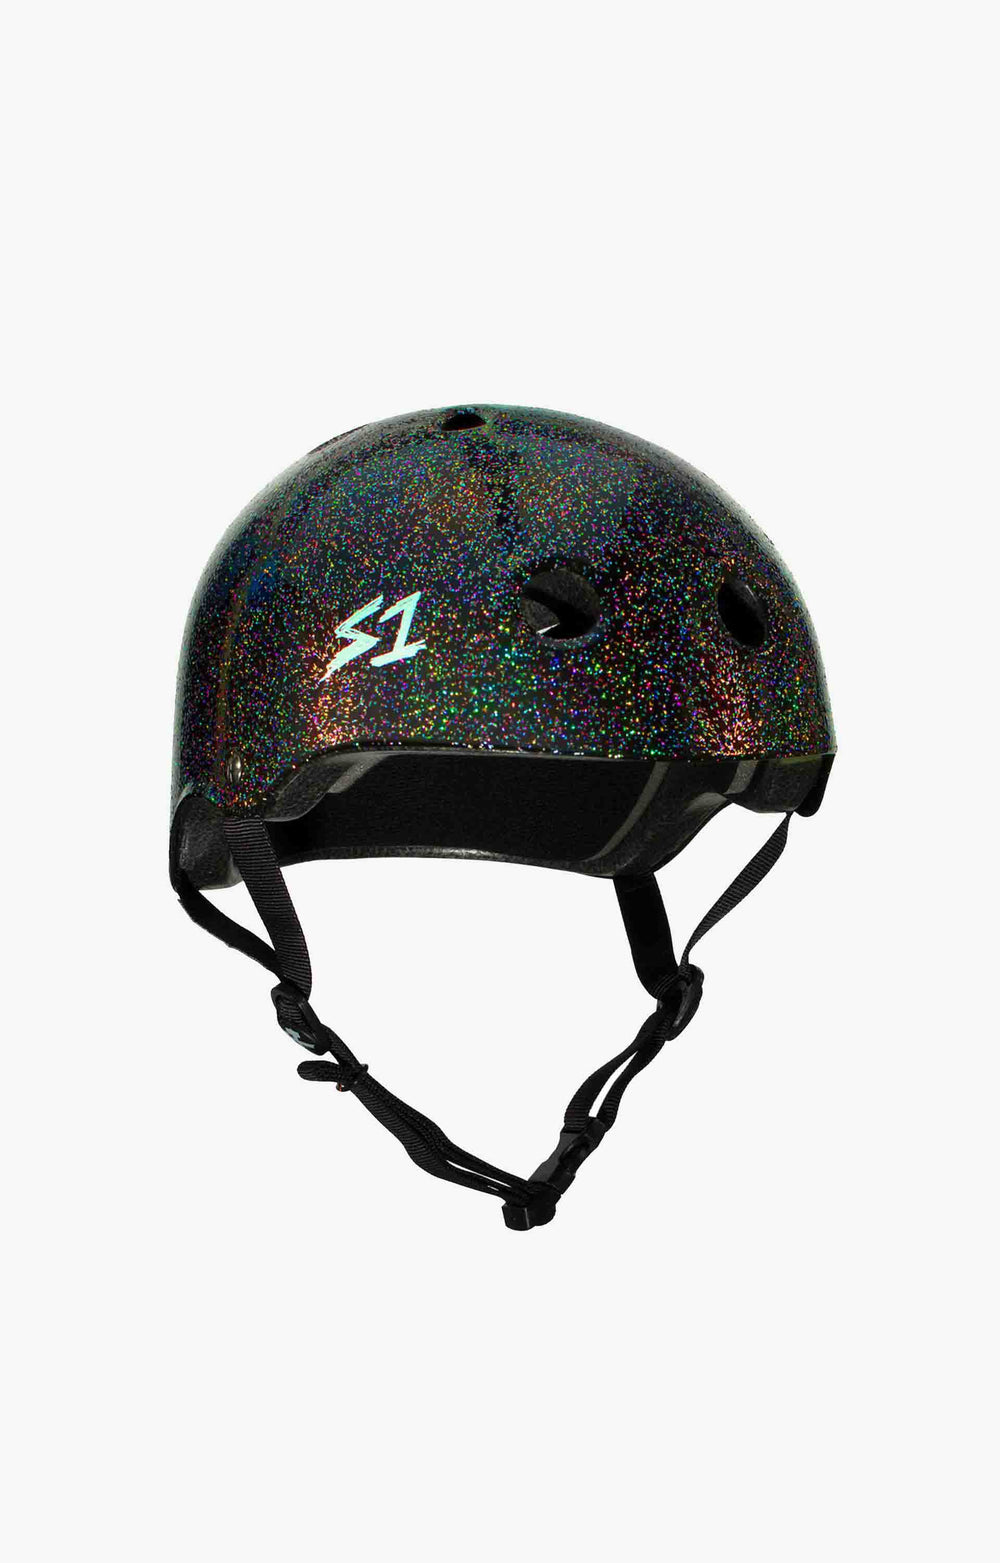 S-One Lifer Series Helmet, Black Gloss Glitter